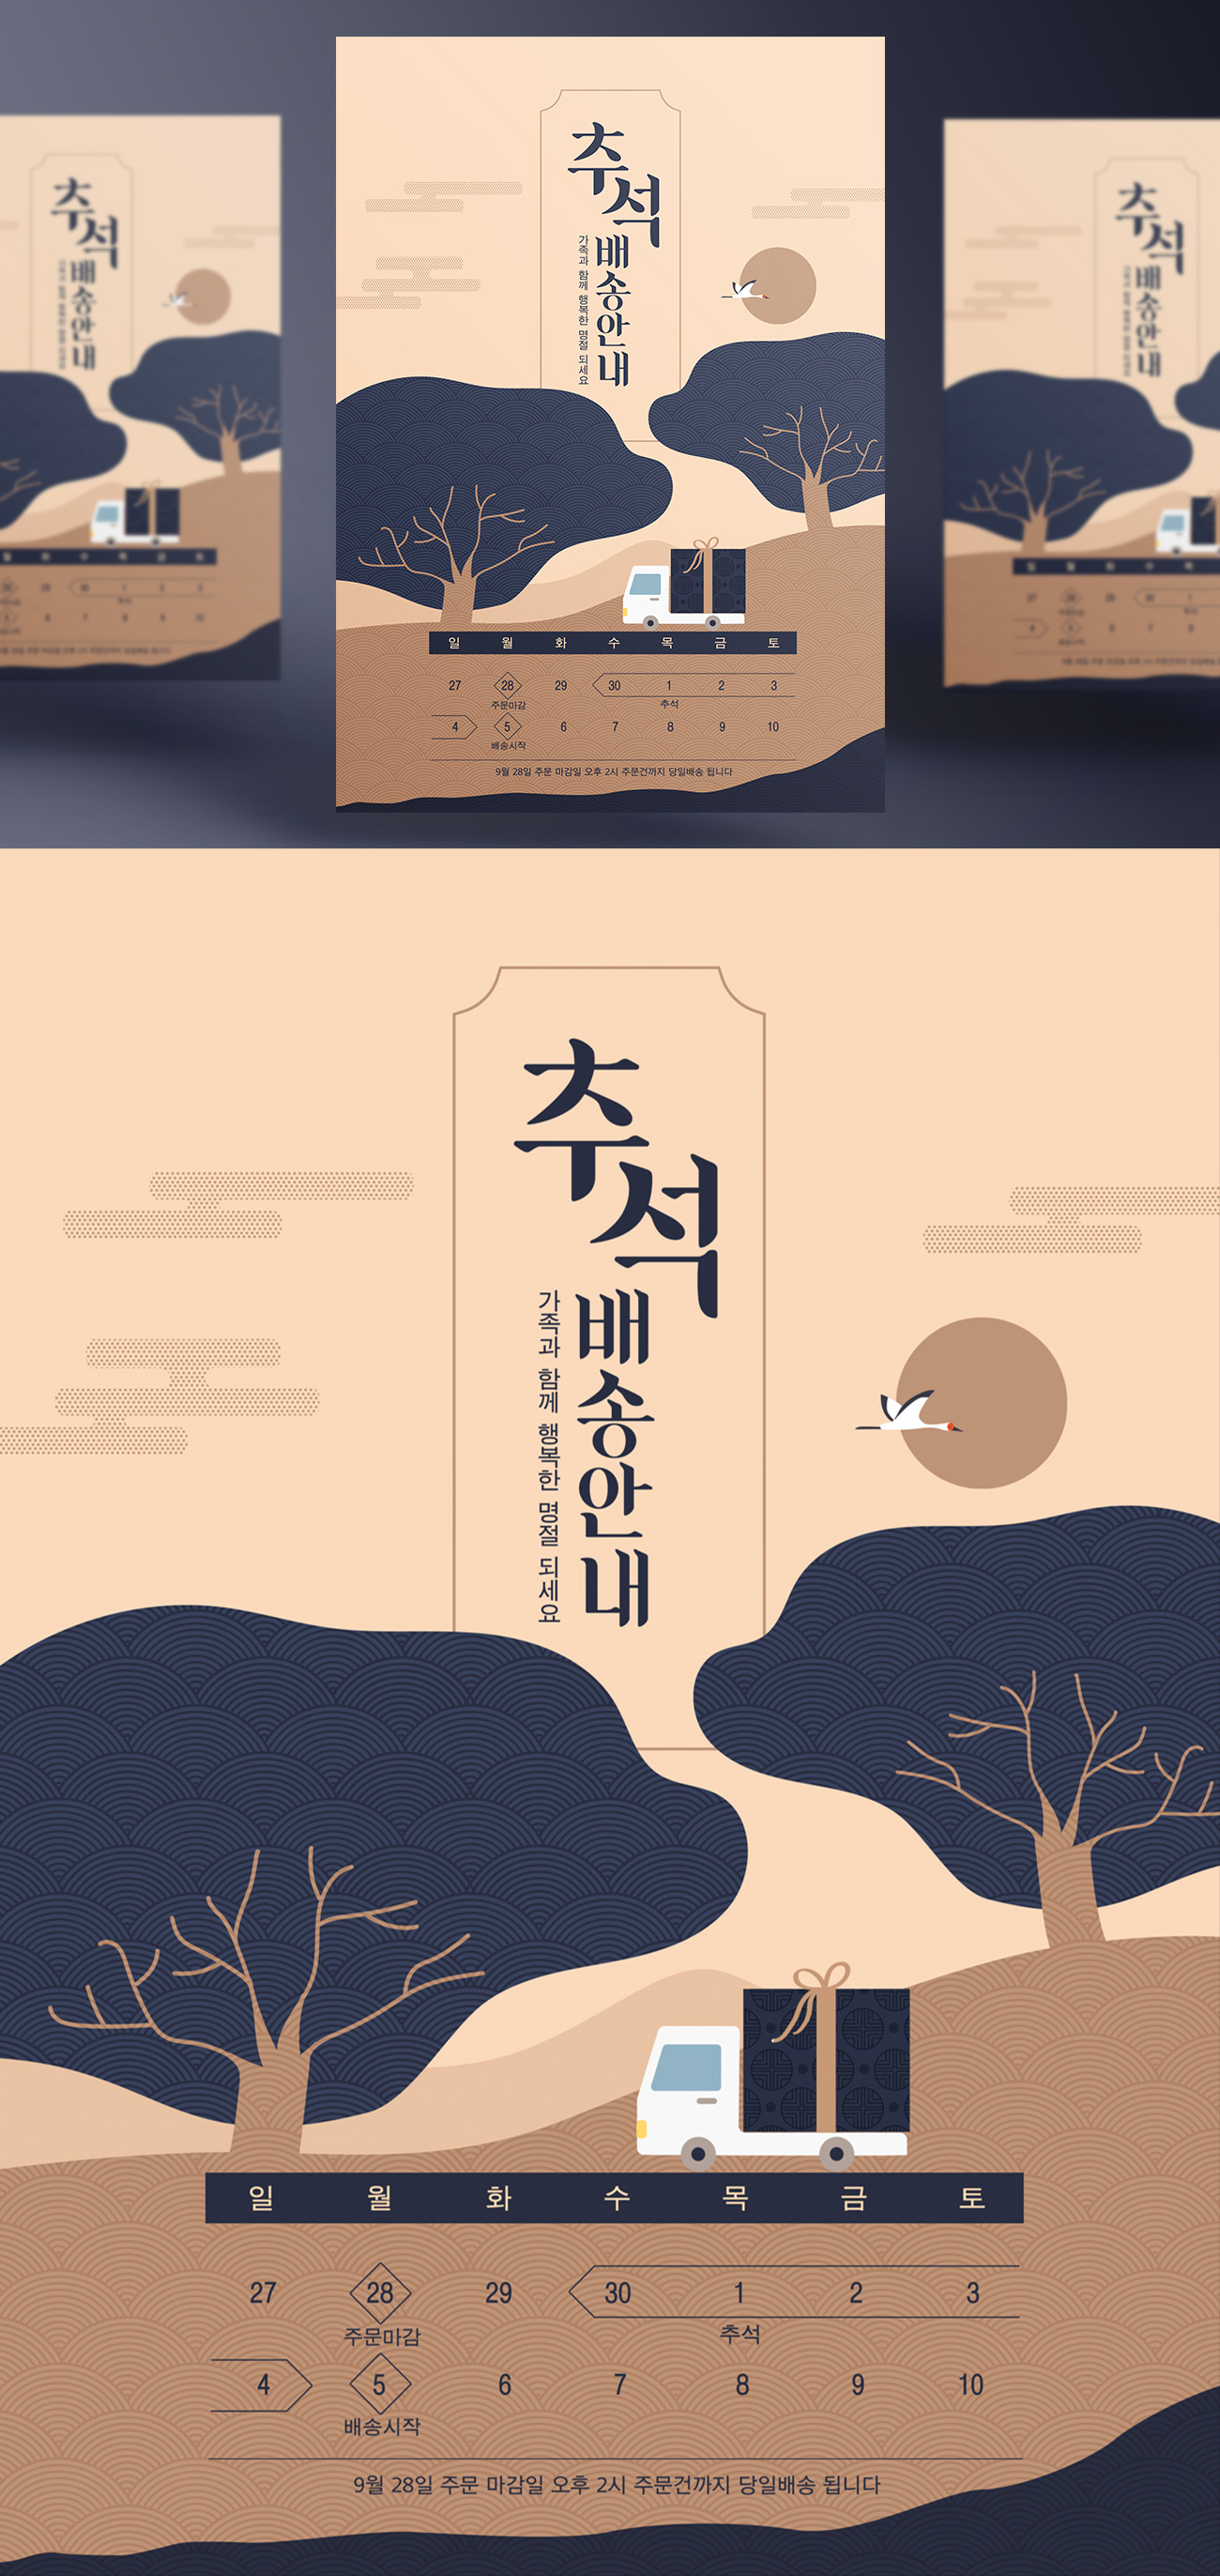 中式东方中国风日式中秋节放假通知快递物流通知海报PSD模板